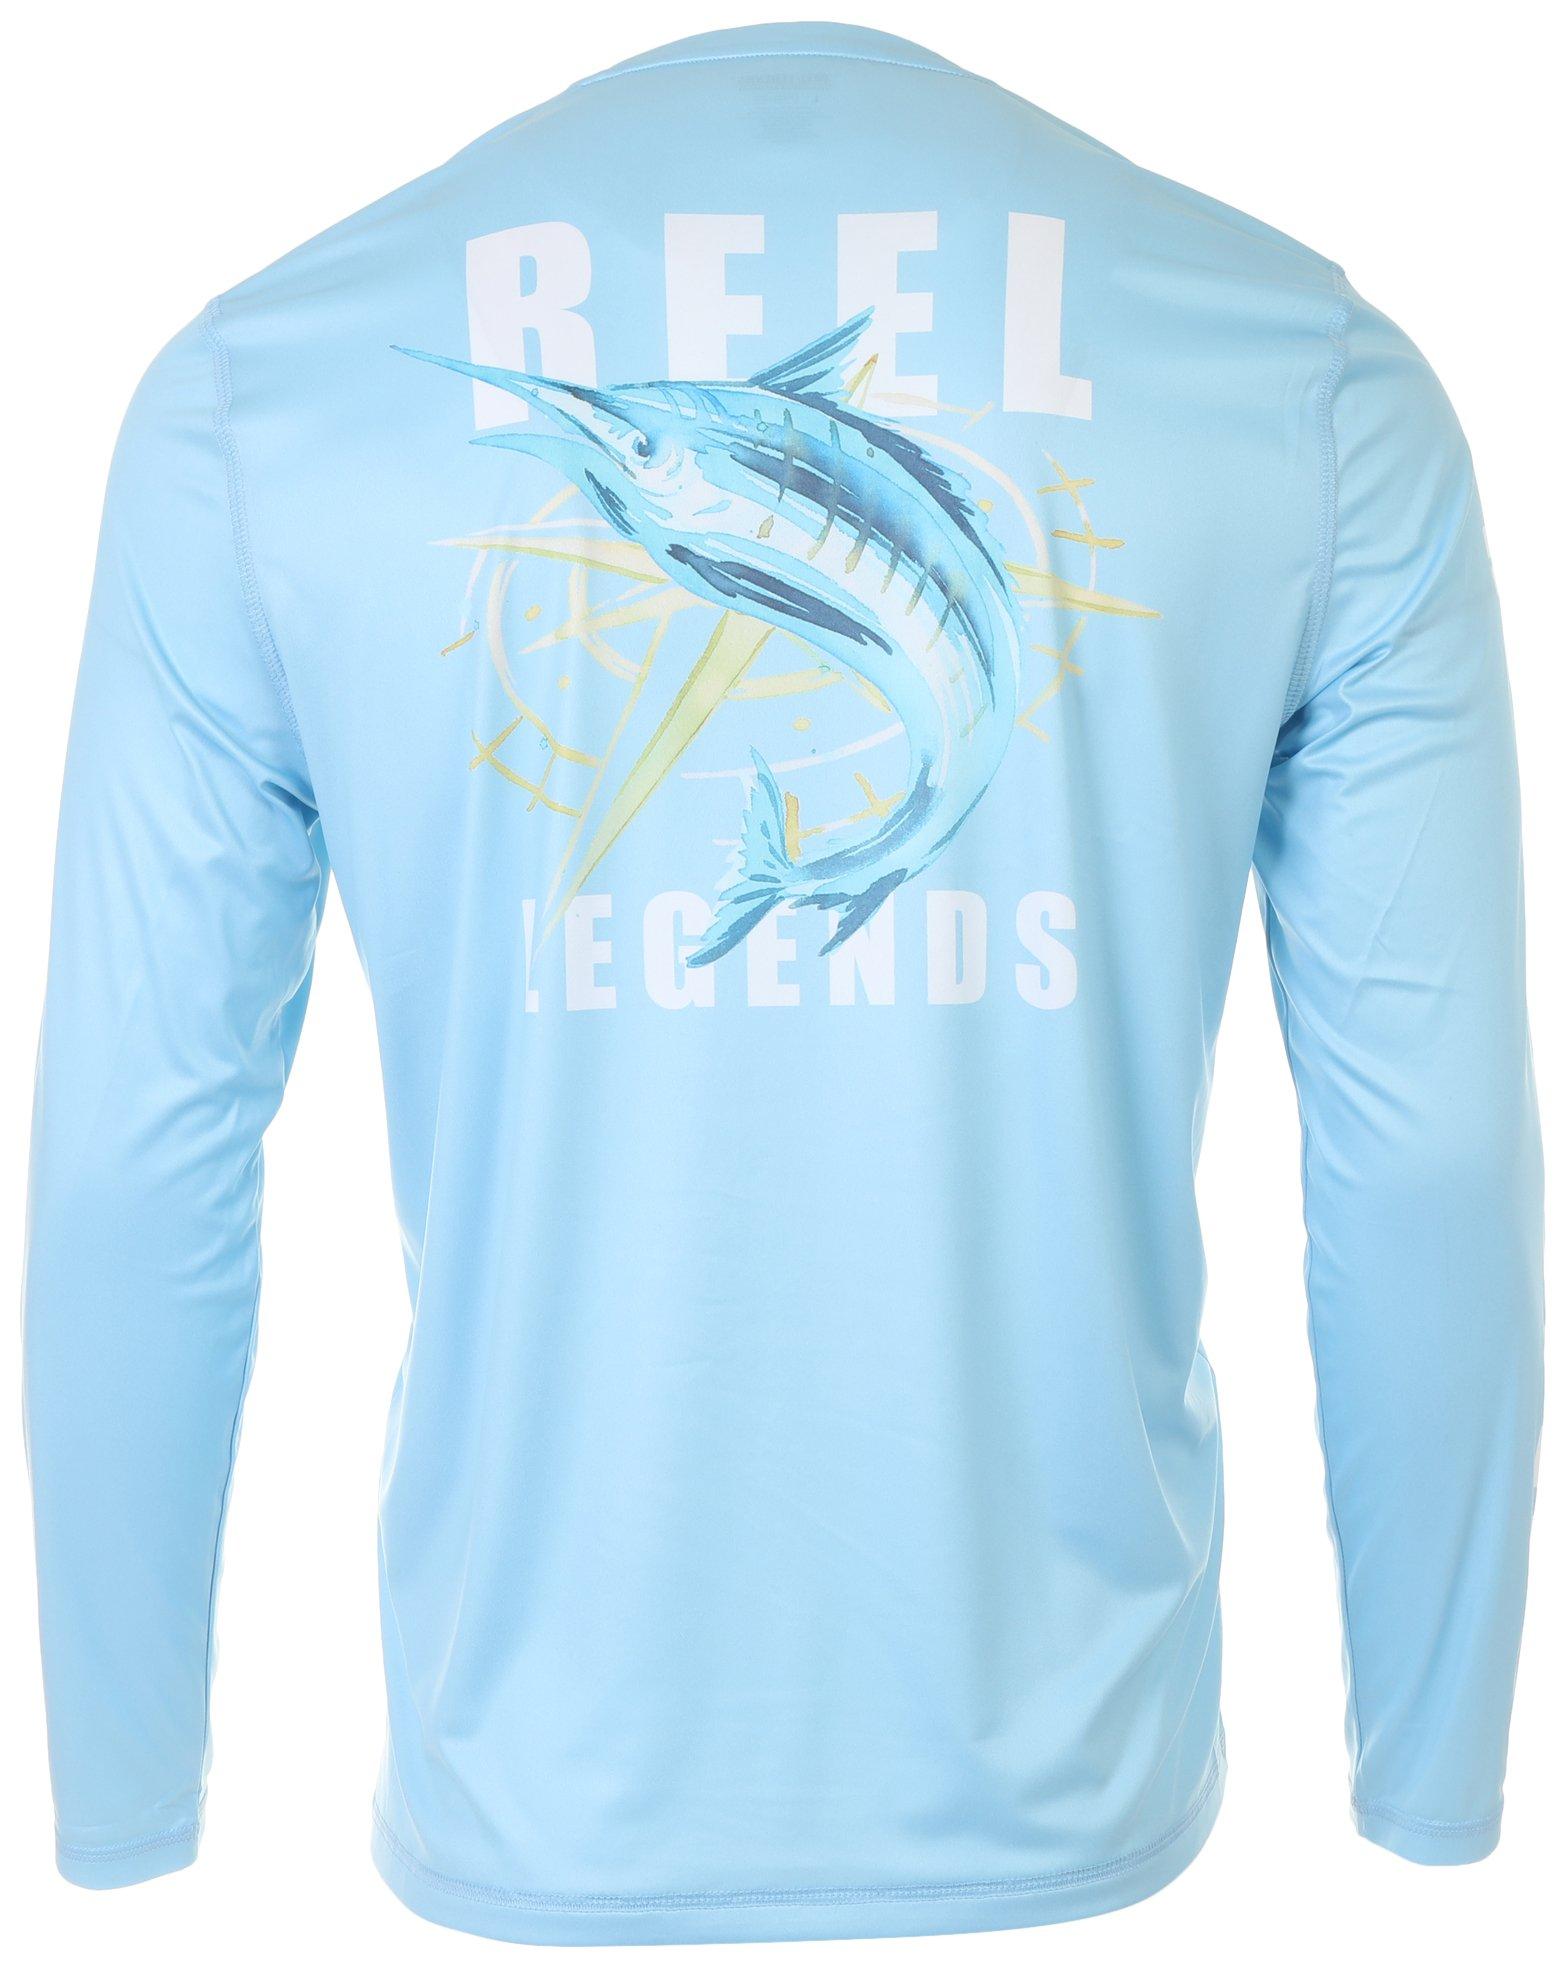 Comprar Reel Legends Mens Reel-Tec Marlin Chase T-Shirt en USA